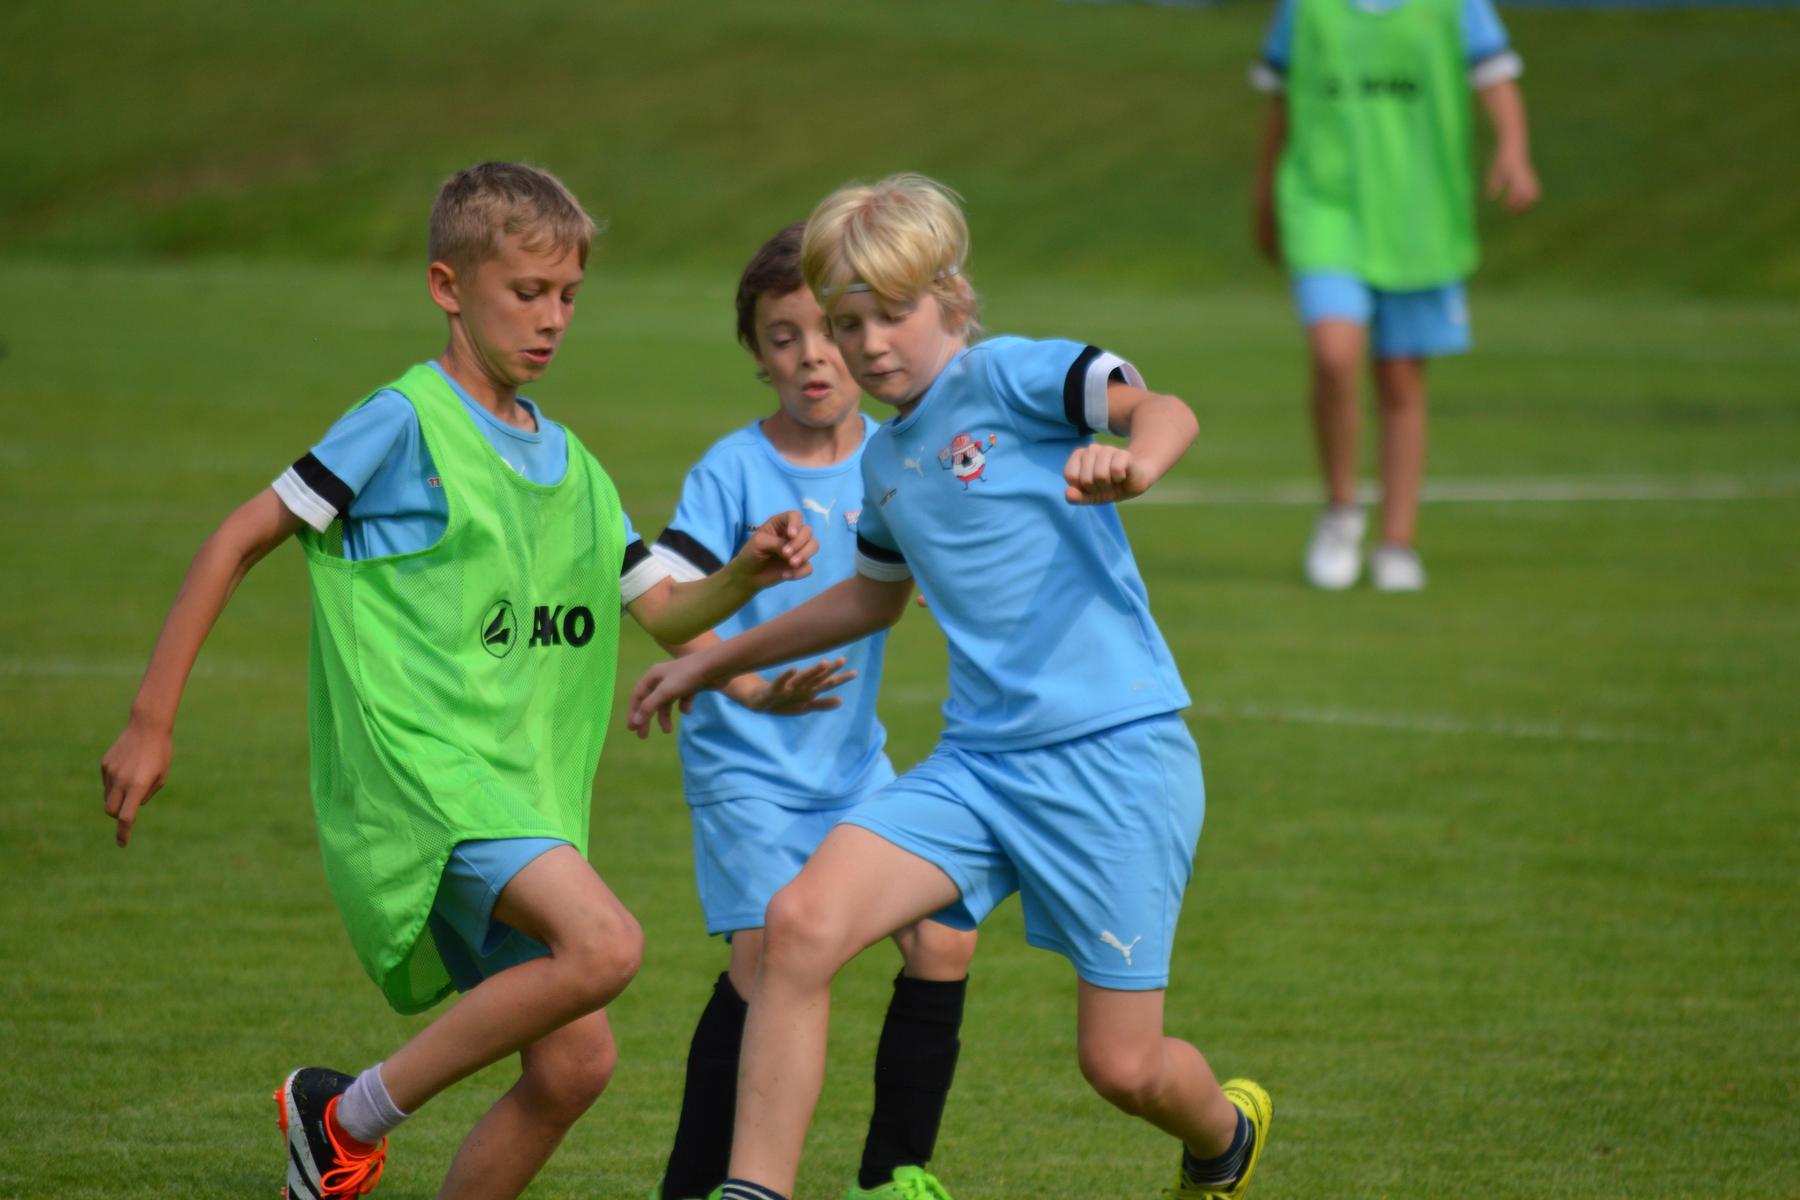 Fussball-Nachwuchs : Sommercamp des SV Hinterberg mit viel Training und Spaß